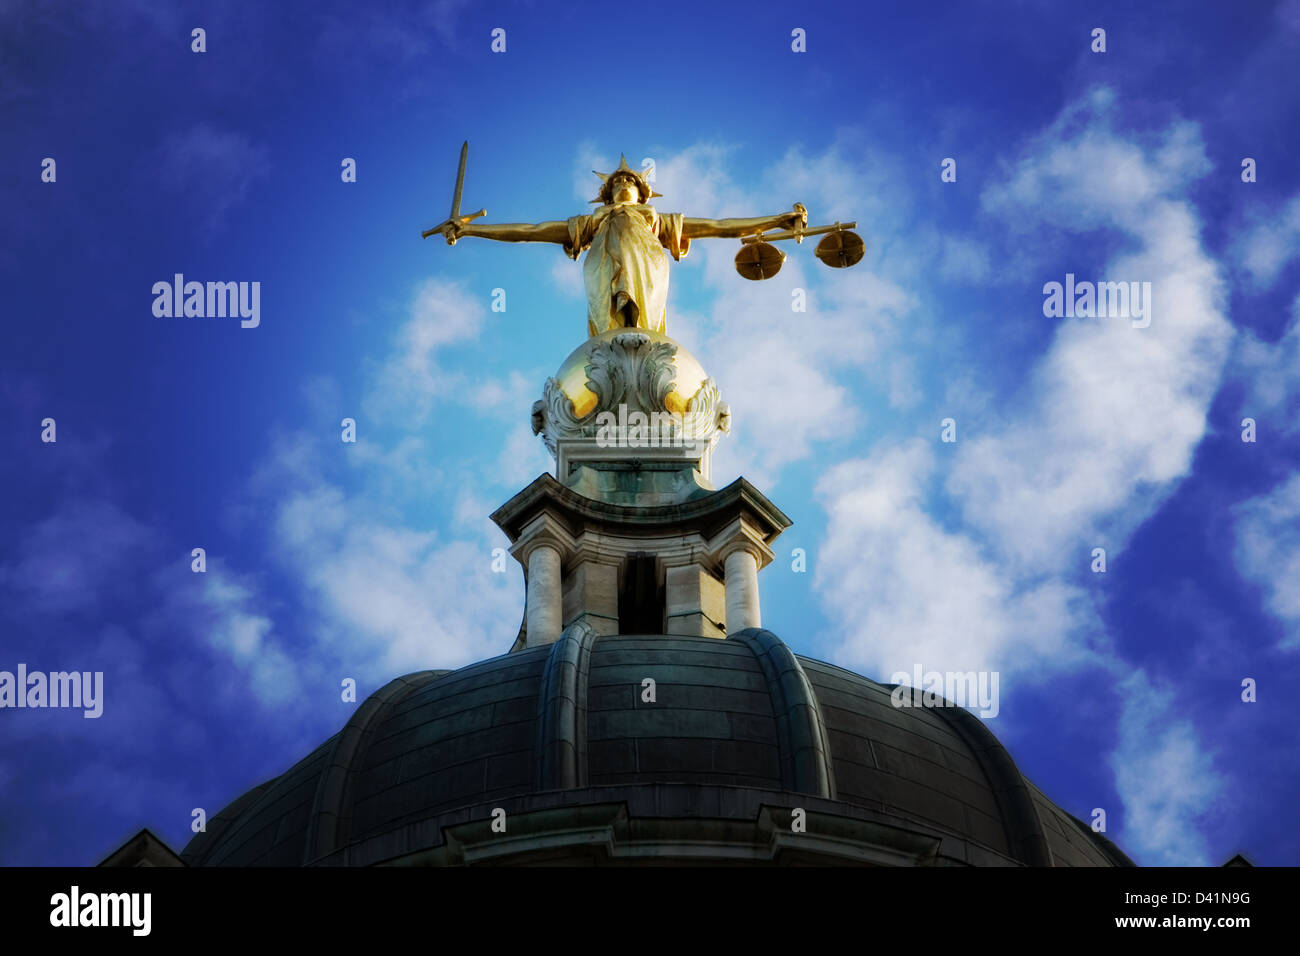 Dame justice sur la partie supérieure de l'Old Bailey à Londres, Angleterre, traités Photoshop effet Lomo. Banque D'Images